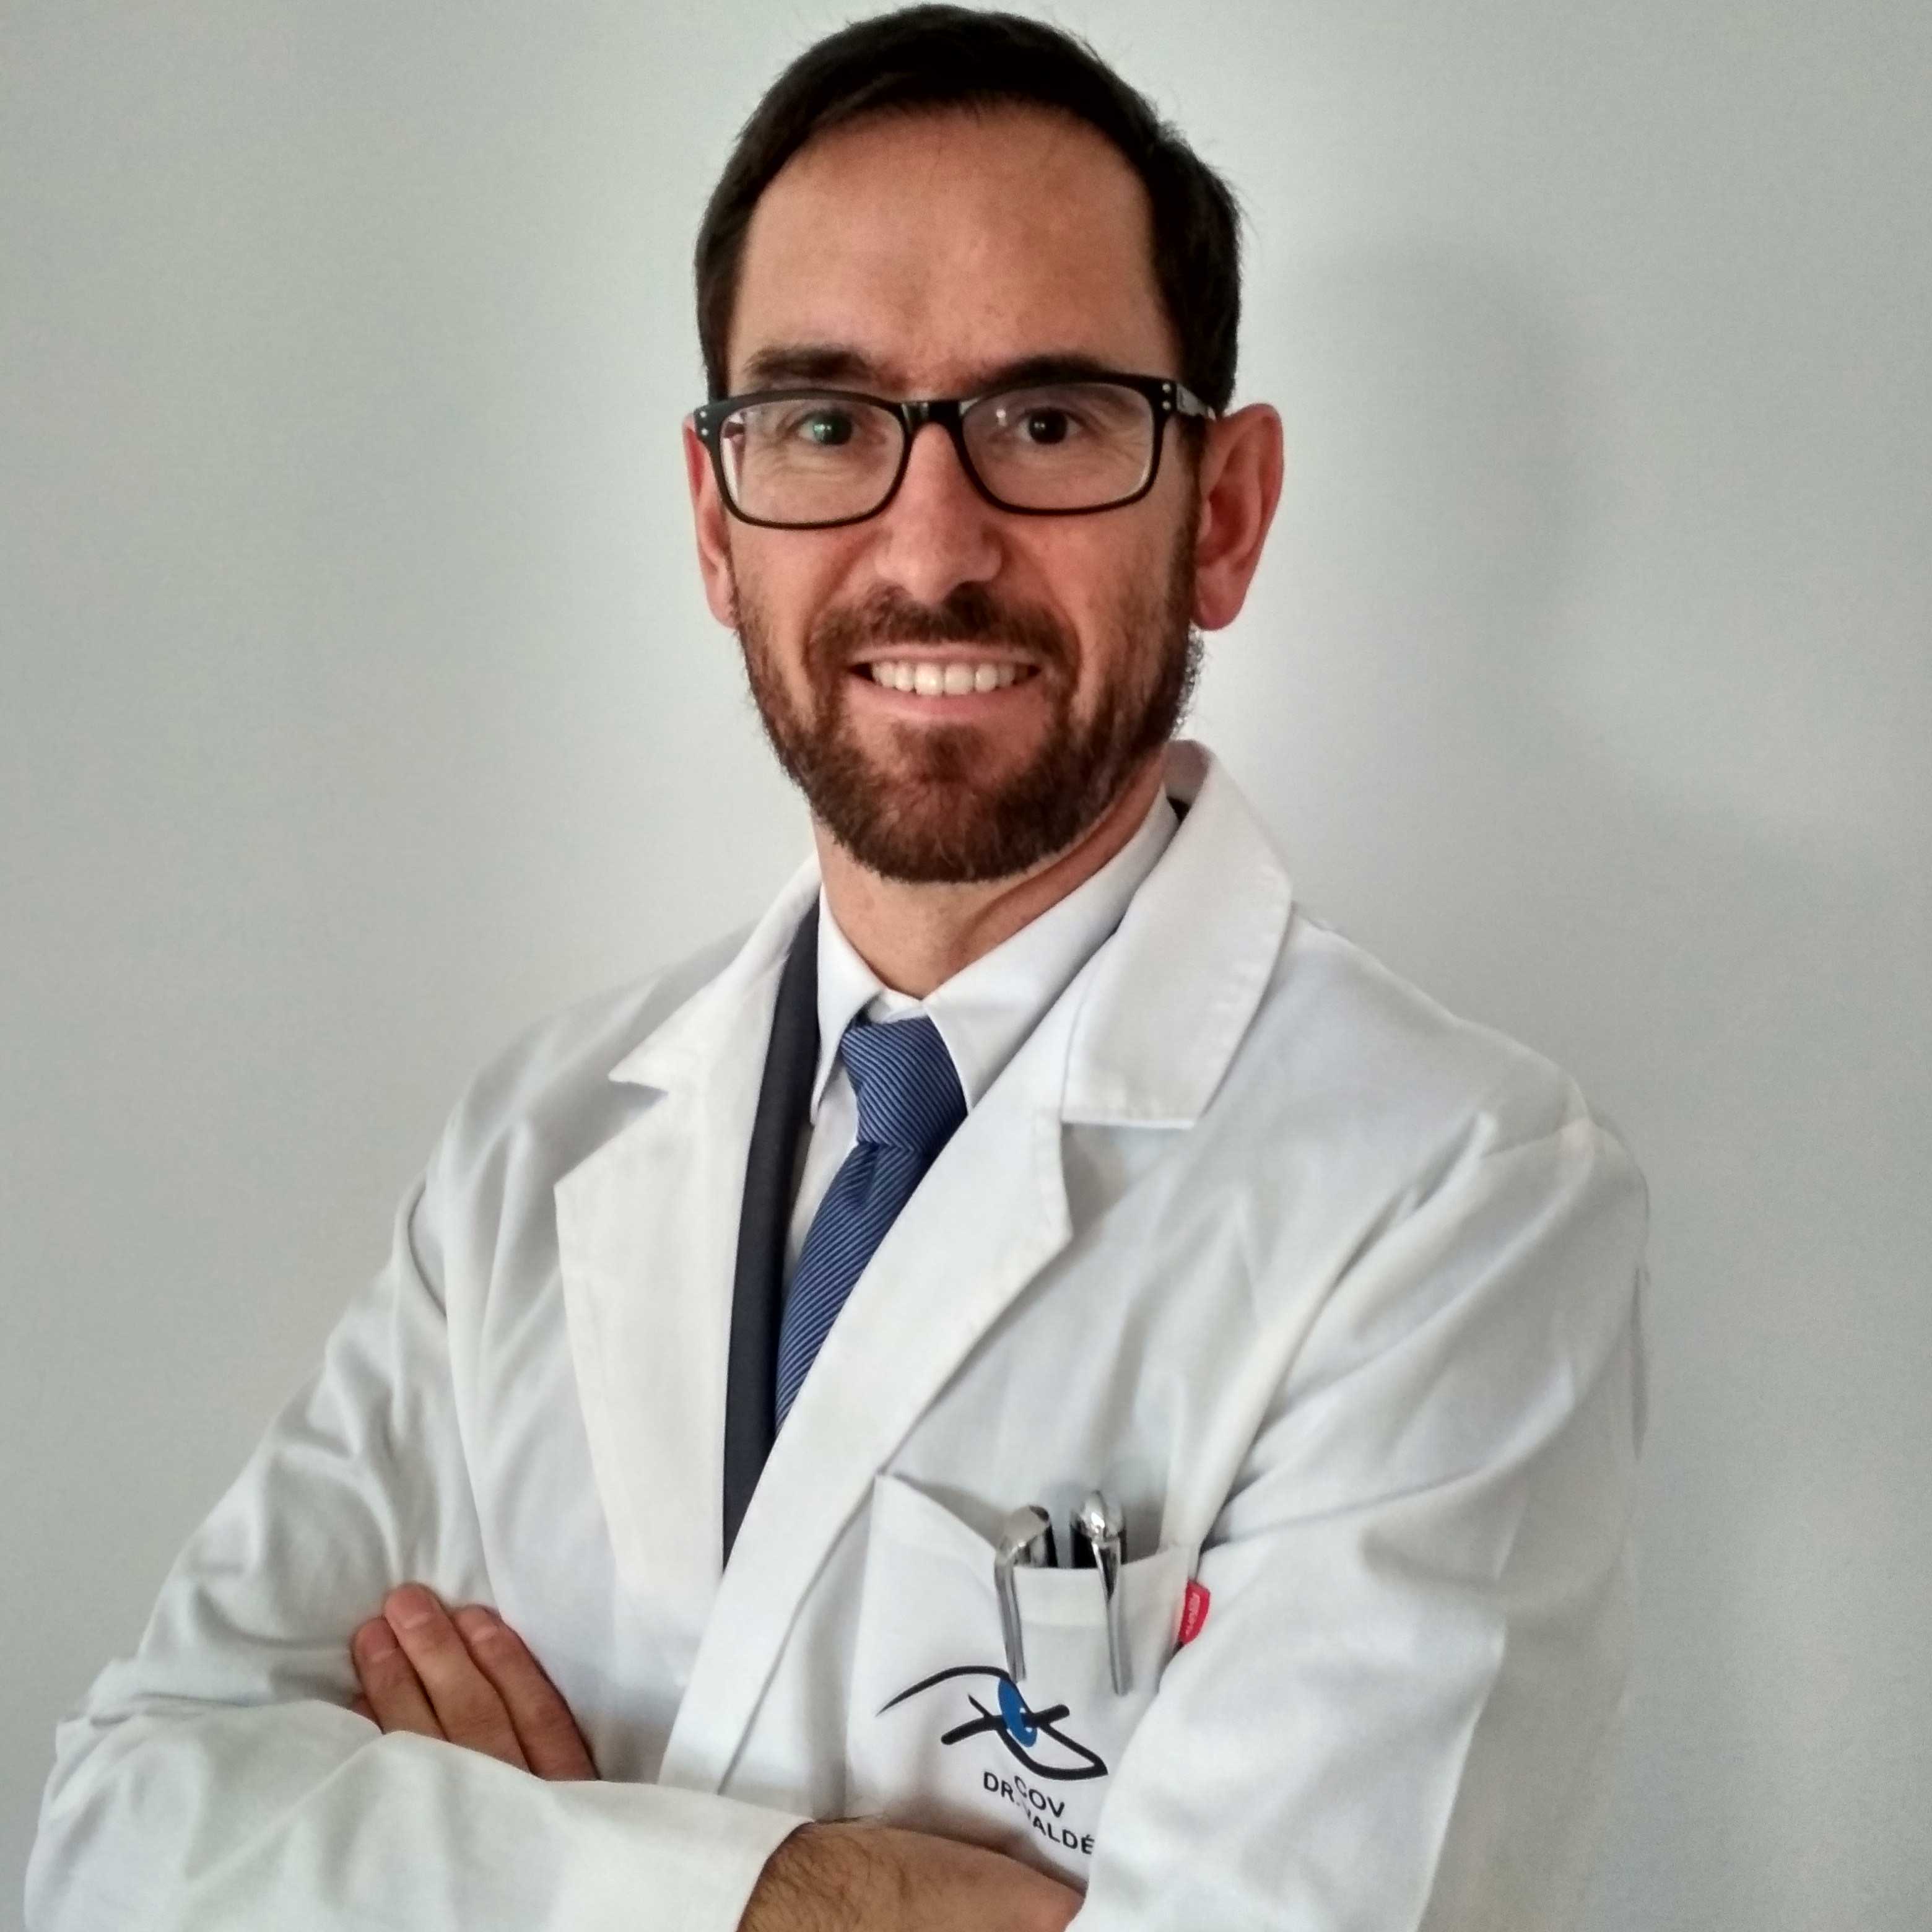 Dr. Valdés